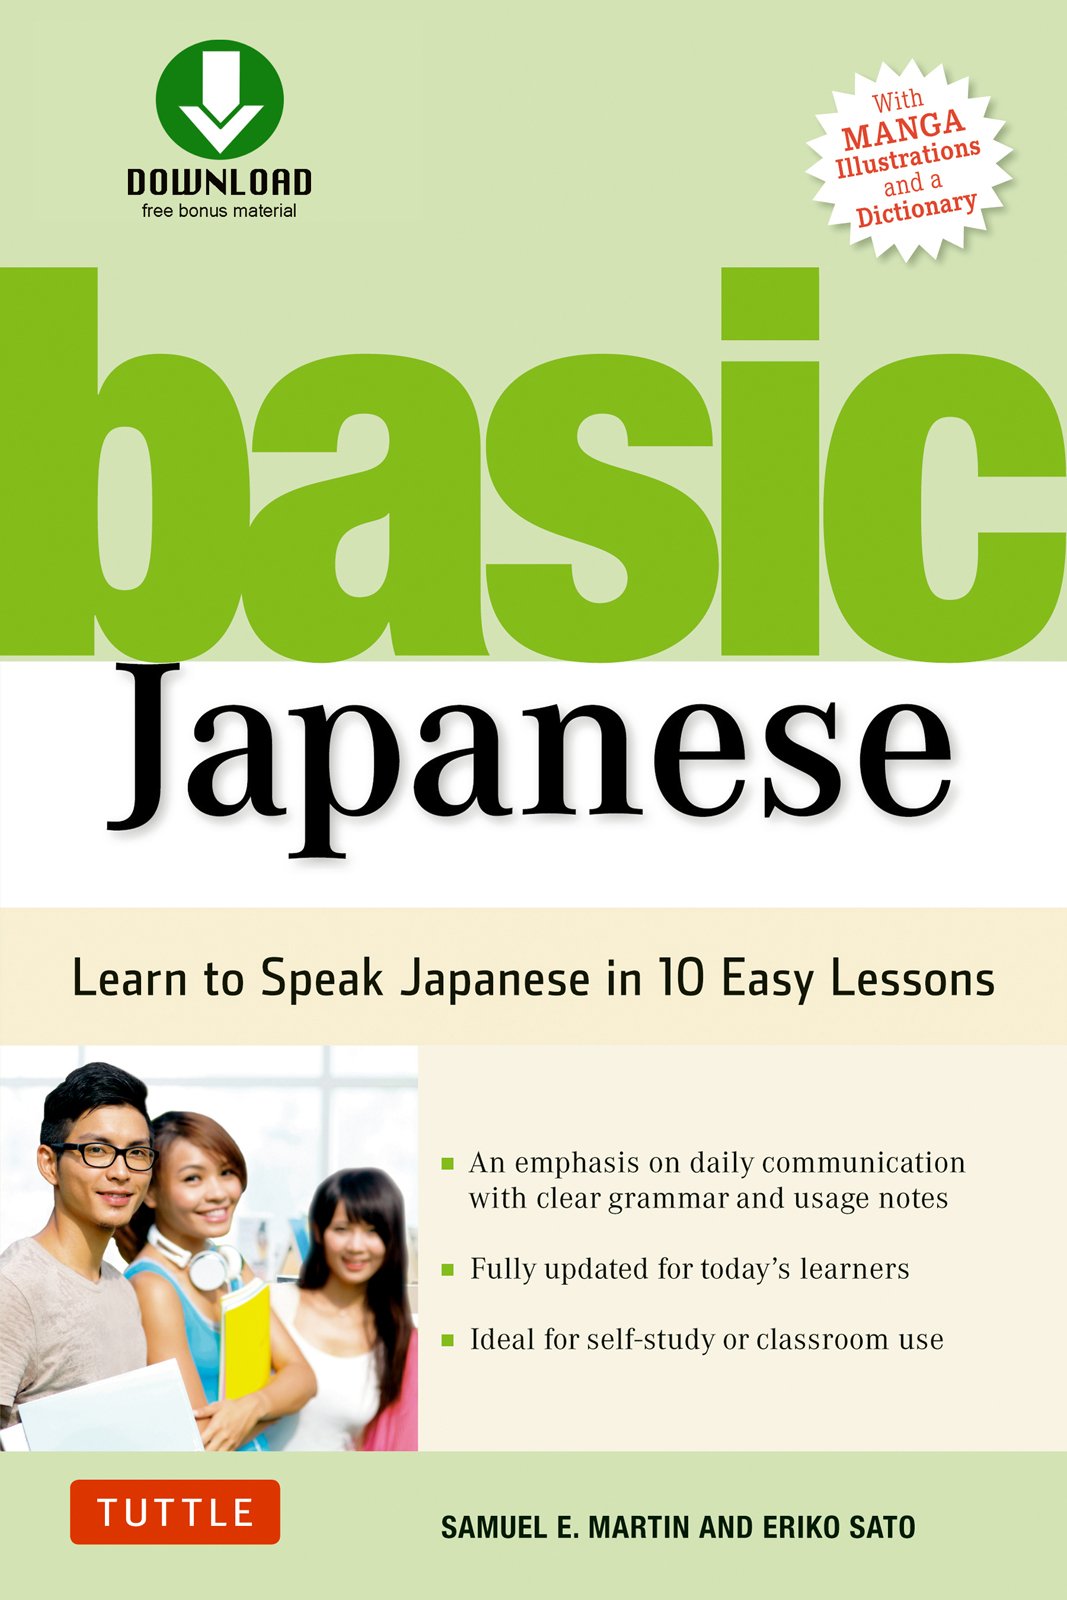 learn to speak japanese for beginners